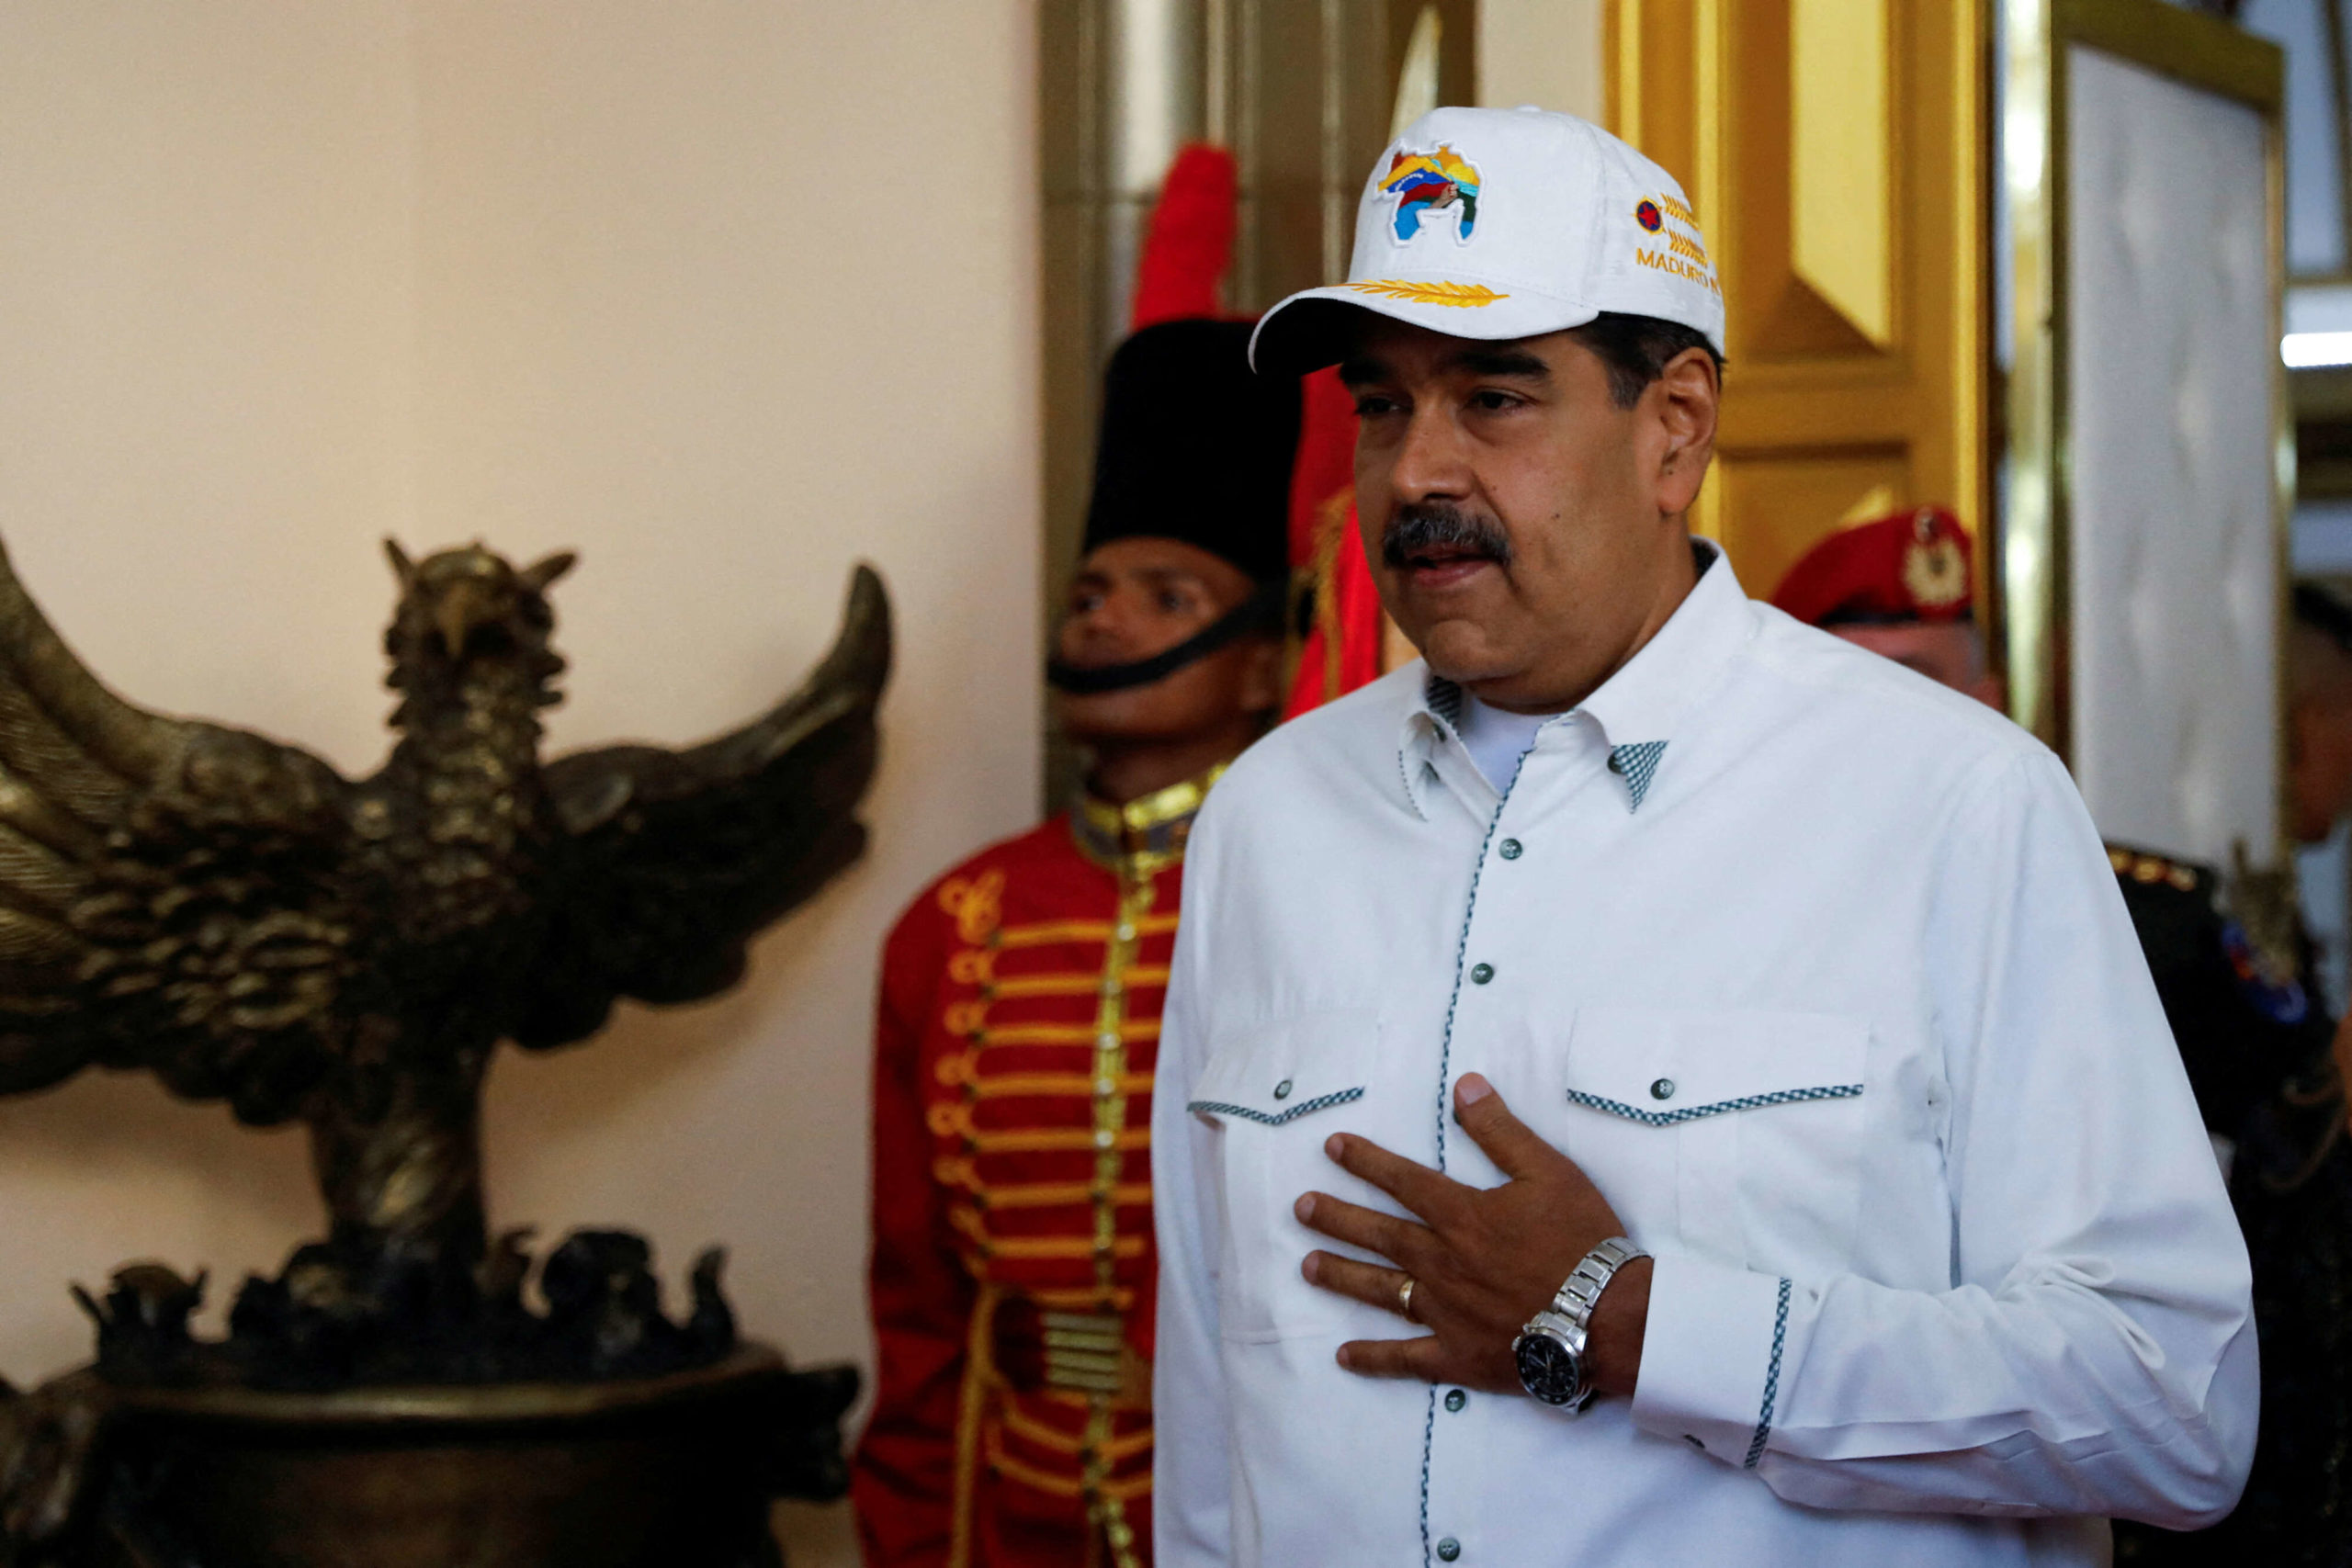 نيكولا مادورو رئيس فنزويلا